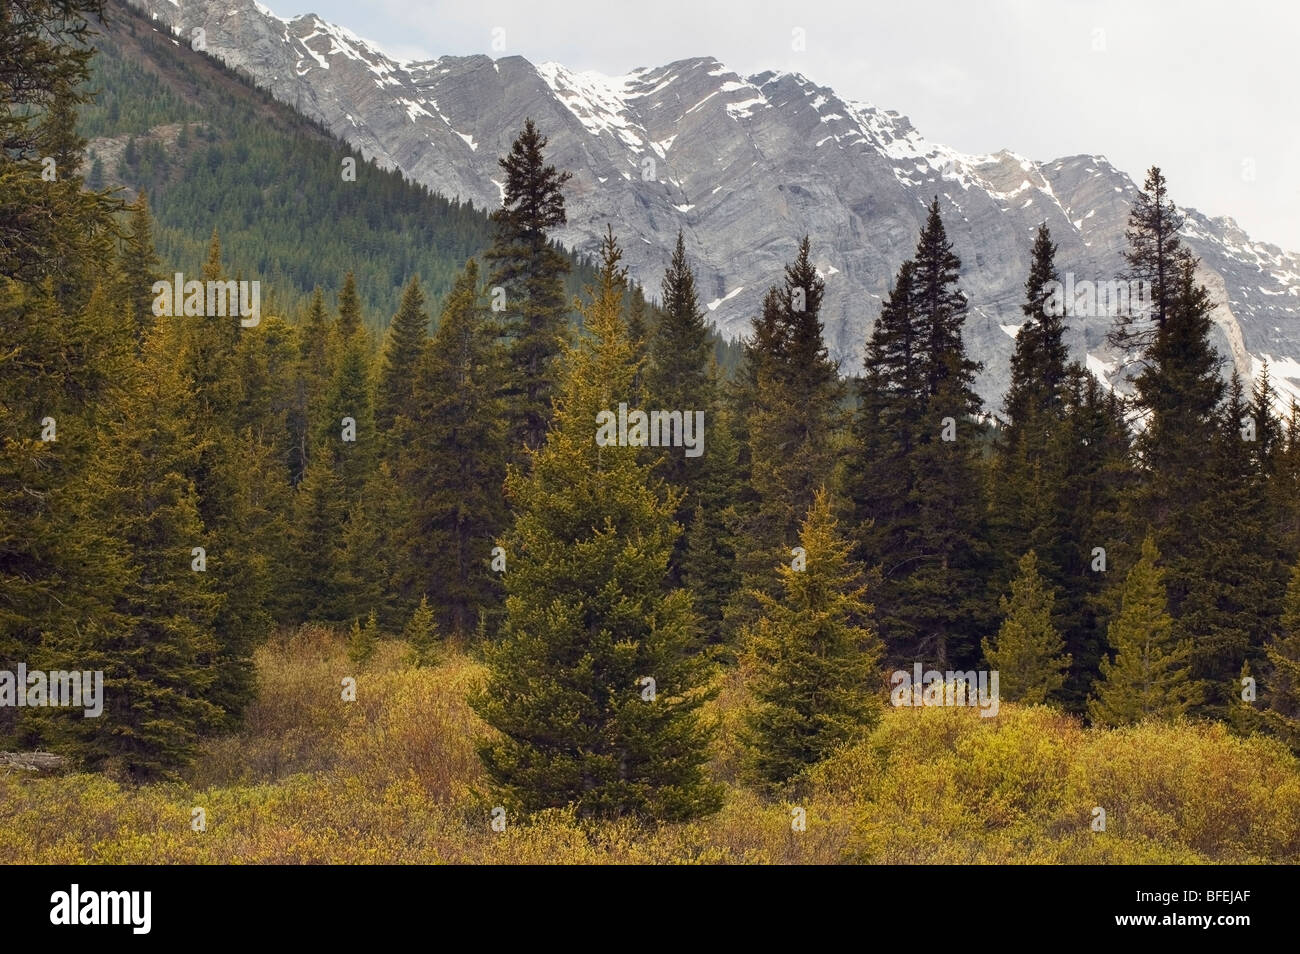 La gamme des wapitis et les prairies près de col de la rivière Highwood, Kananaskis, Alberta, Canada Banque D'Images